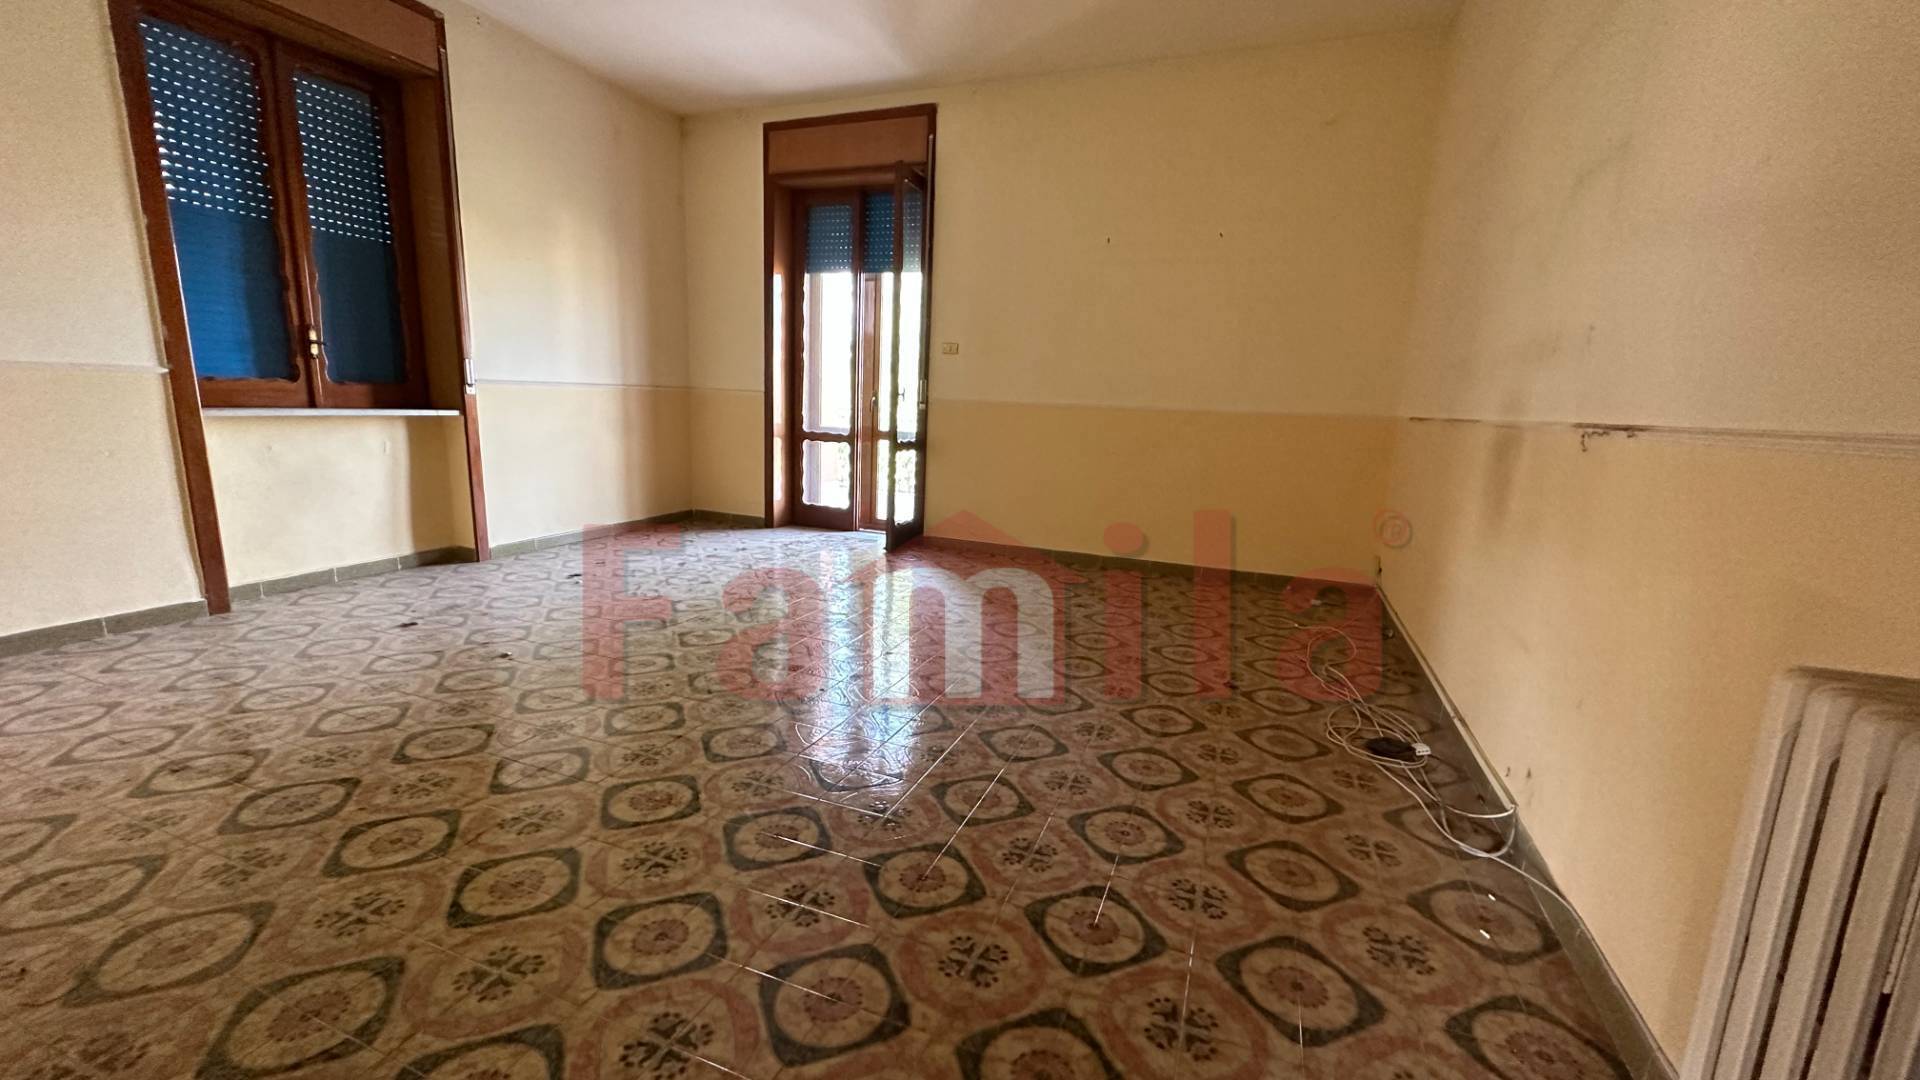 Appartamento in vendita a Sperone, 5 locali, prezzo € 75.000 | PortaleAgenzieImmobiliari.it